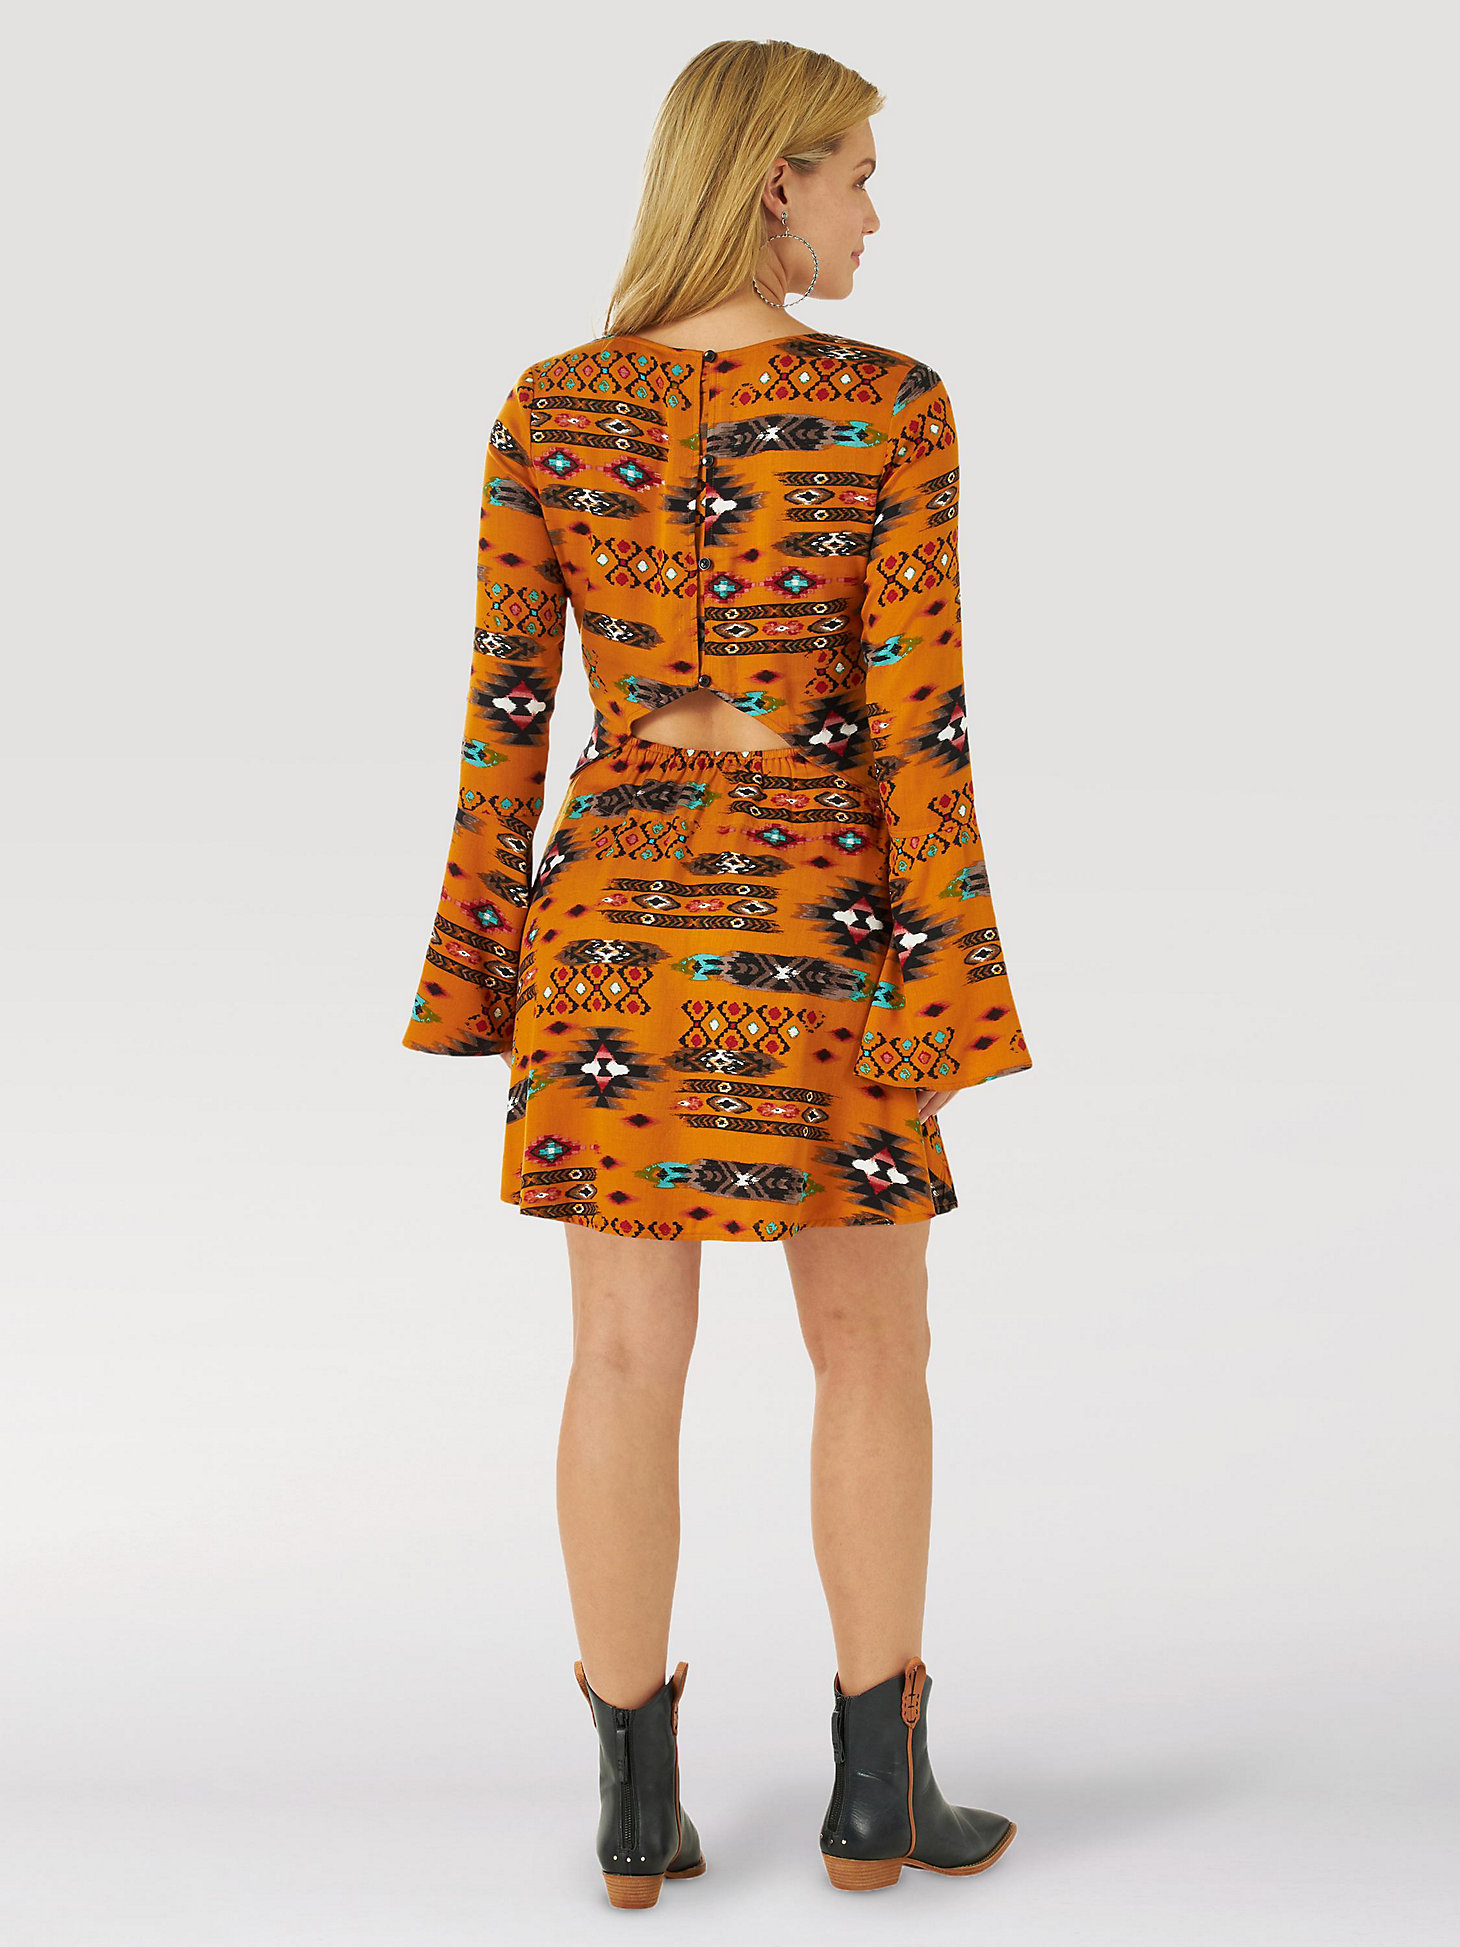 Women's Wrangler Retro® Peekaboo Back Southwestern Dress in tan alternative view 1